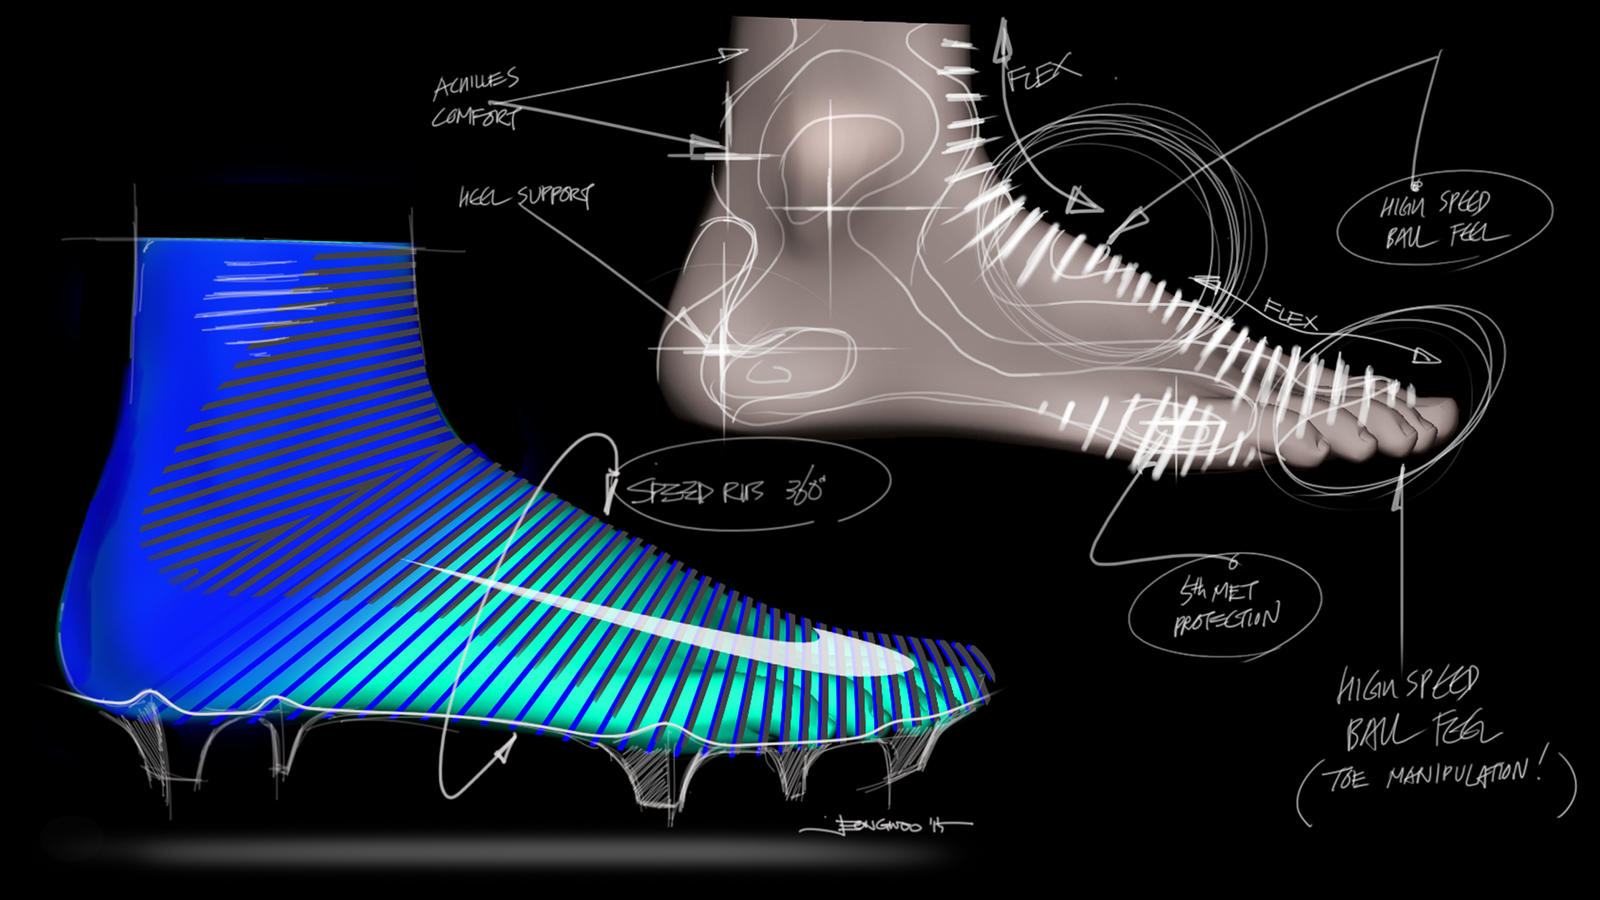 Thiết kế giày Nike Mercurial Superfly với ý tưởng về các sợi vải ôm chân